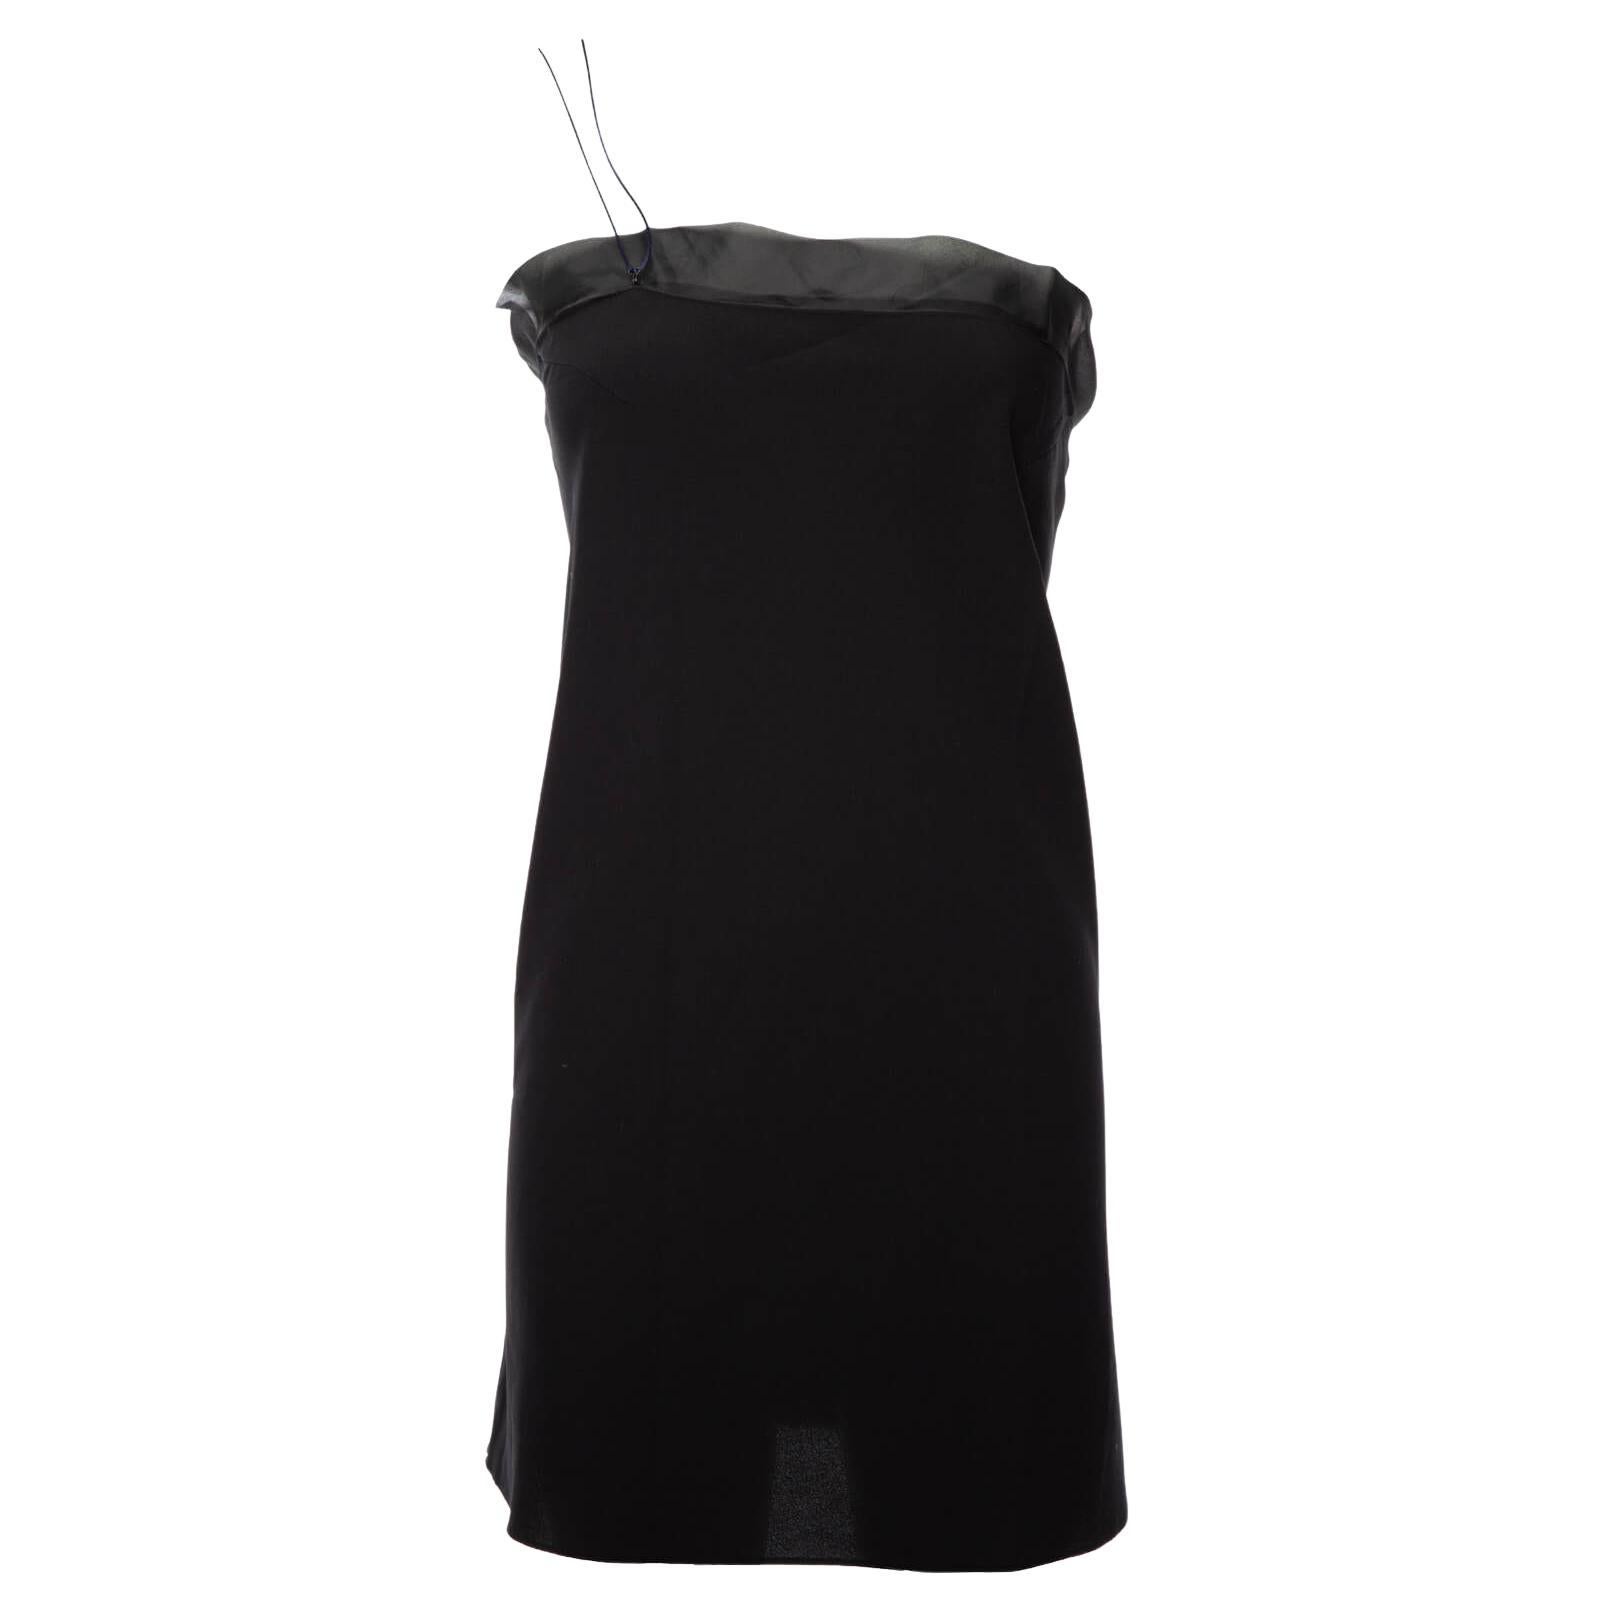 Pre-Loved Balenciaga Women's Spaggetti Strap Top Black Silk